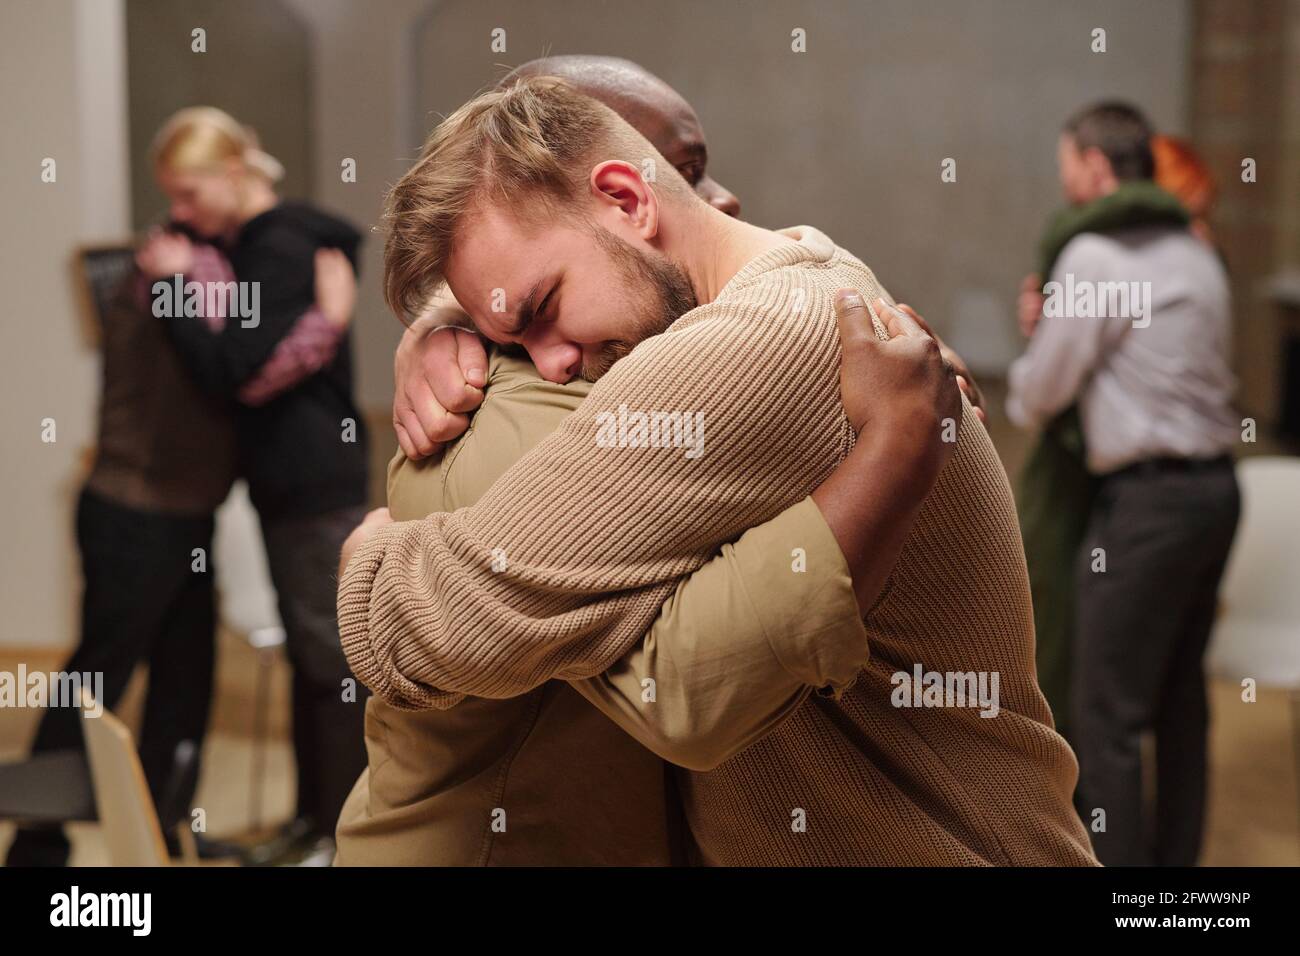 Zwei junge interkulturelle Männer umarmen sich, während einer von ihnen weint Stockfoto